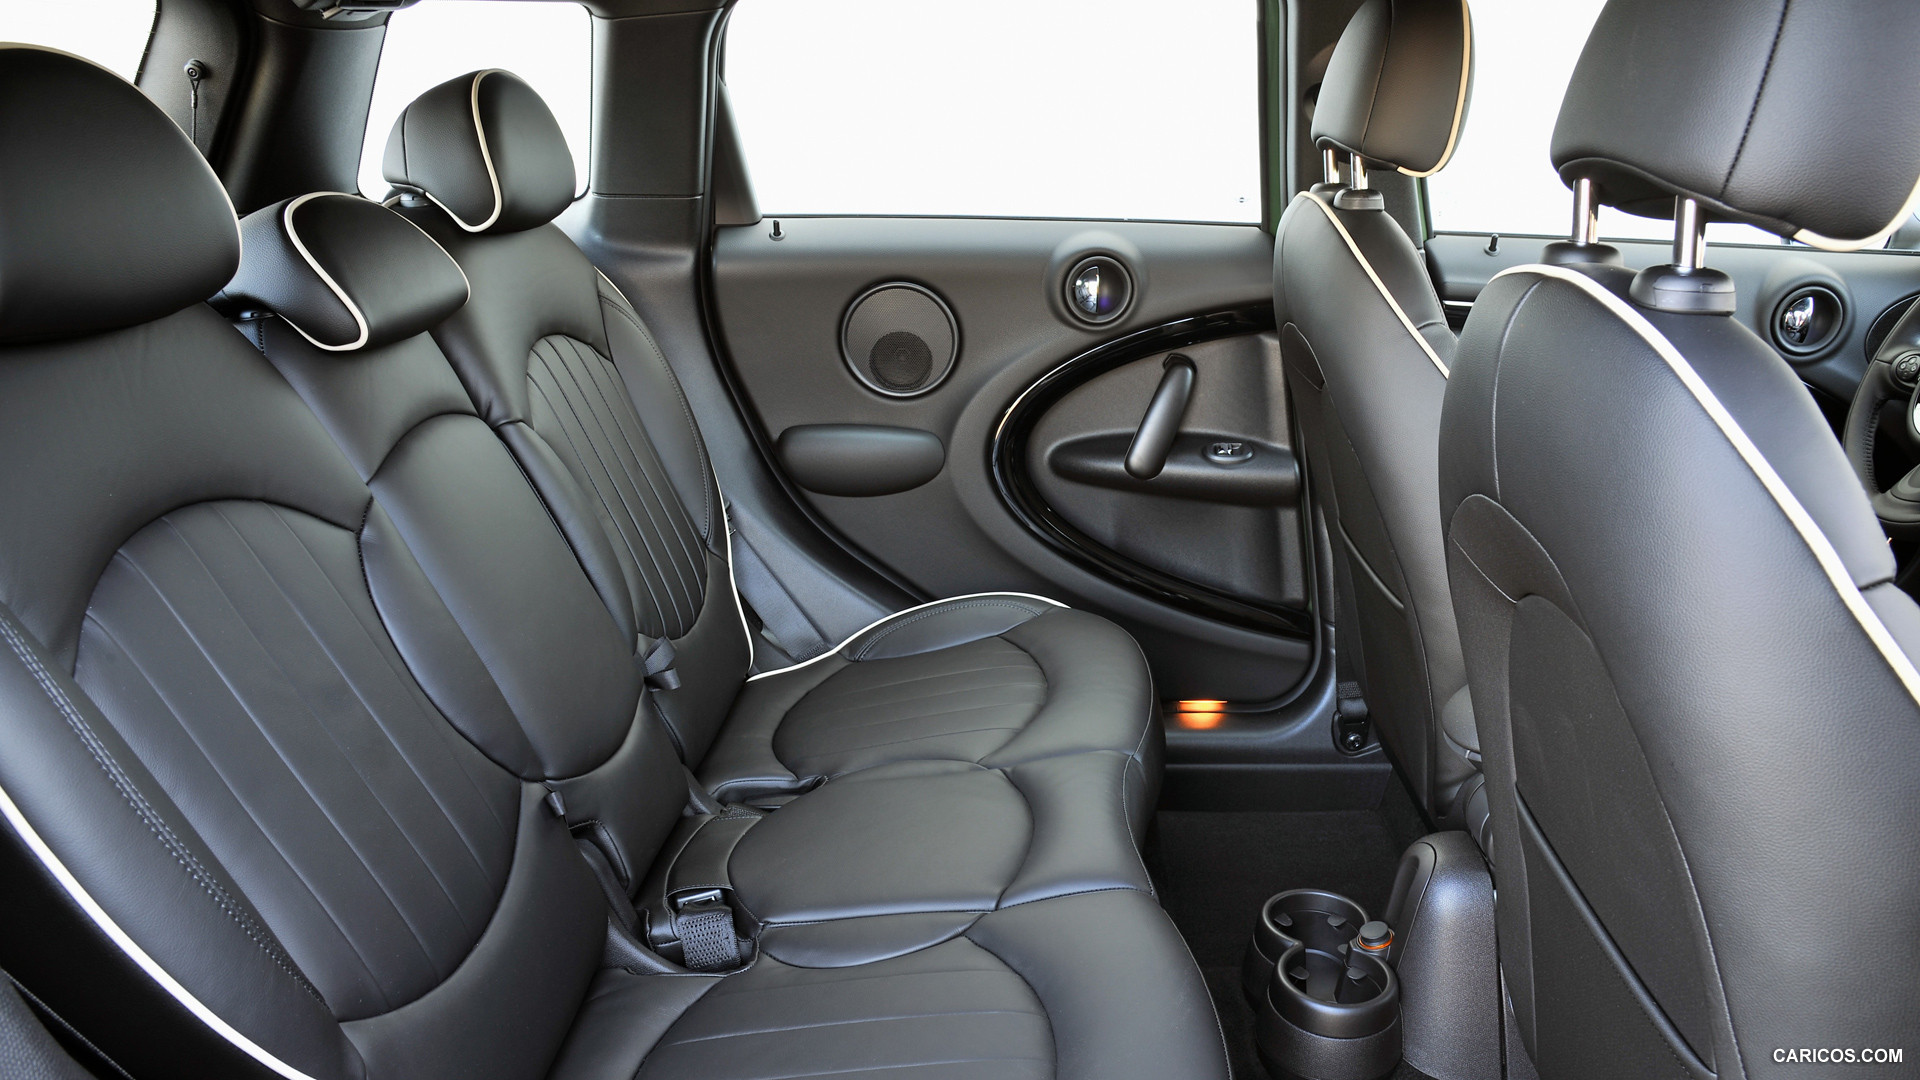 2015 MINI Cooper S Countryman  - Interior Rear Seats, #197 of 291